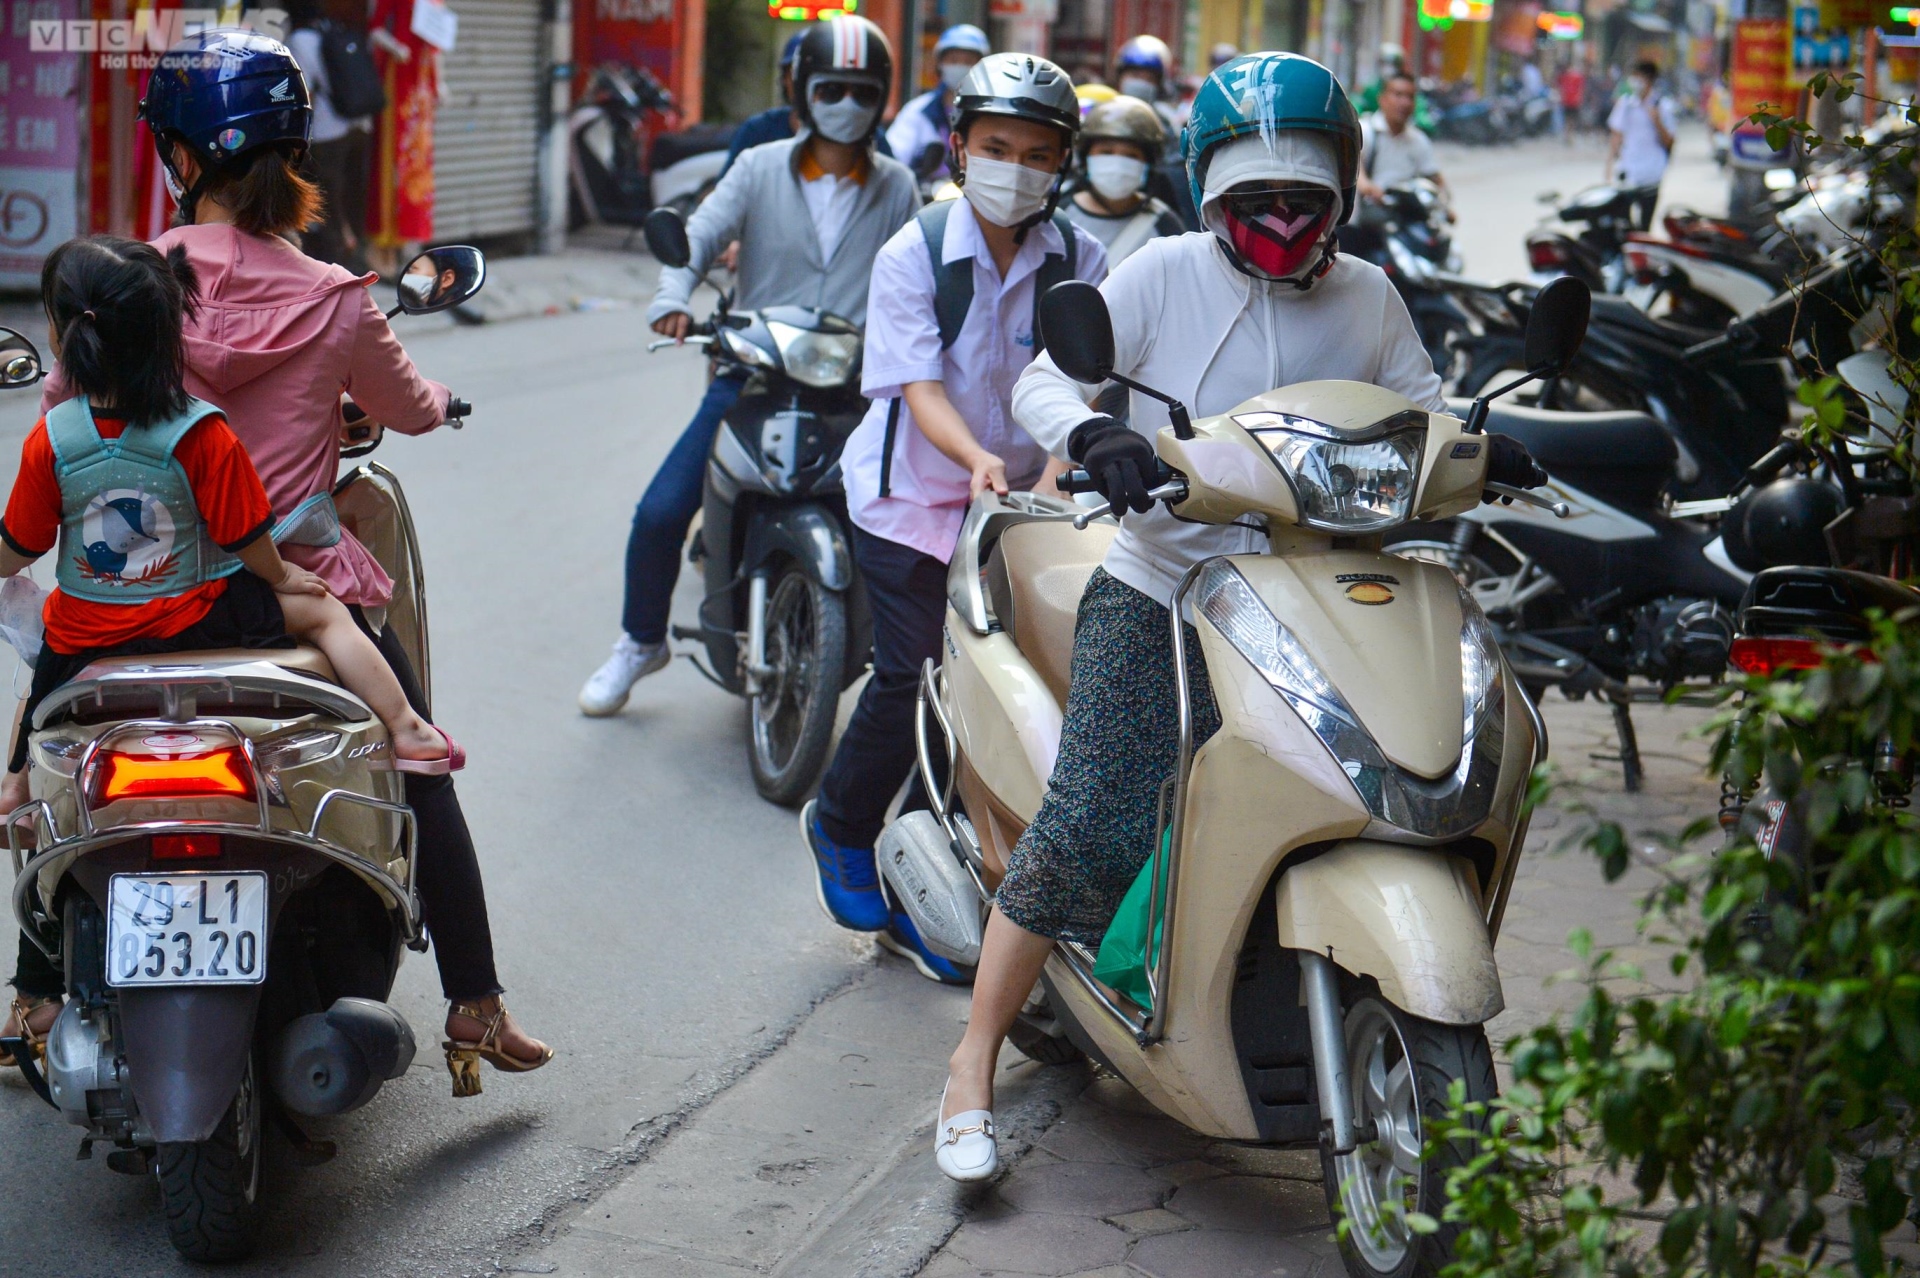 Ảnh: Rào tôn chắn gần hết lòng đường ở Hà Nội, dân khổ sở luồn lách đi qua - Ảnh 3.